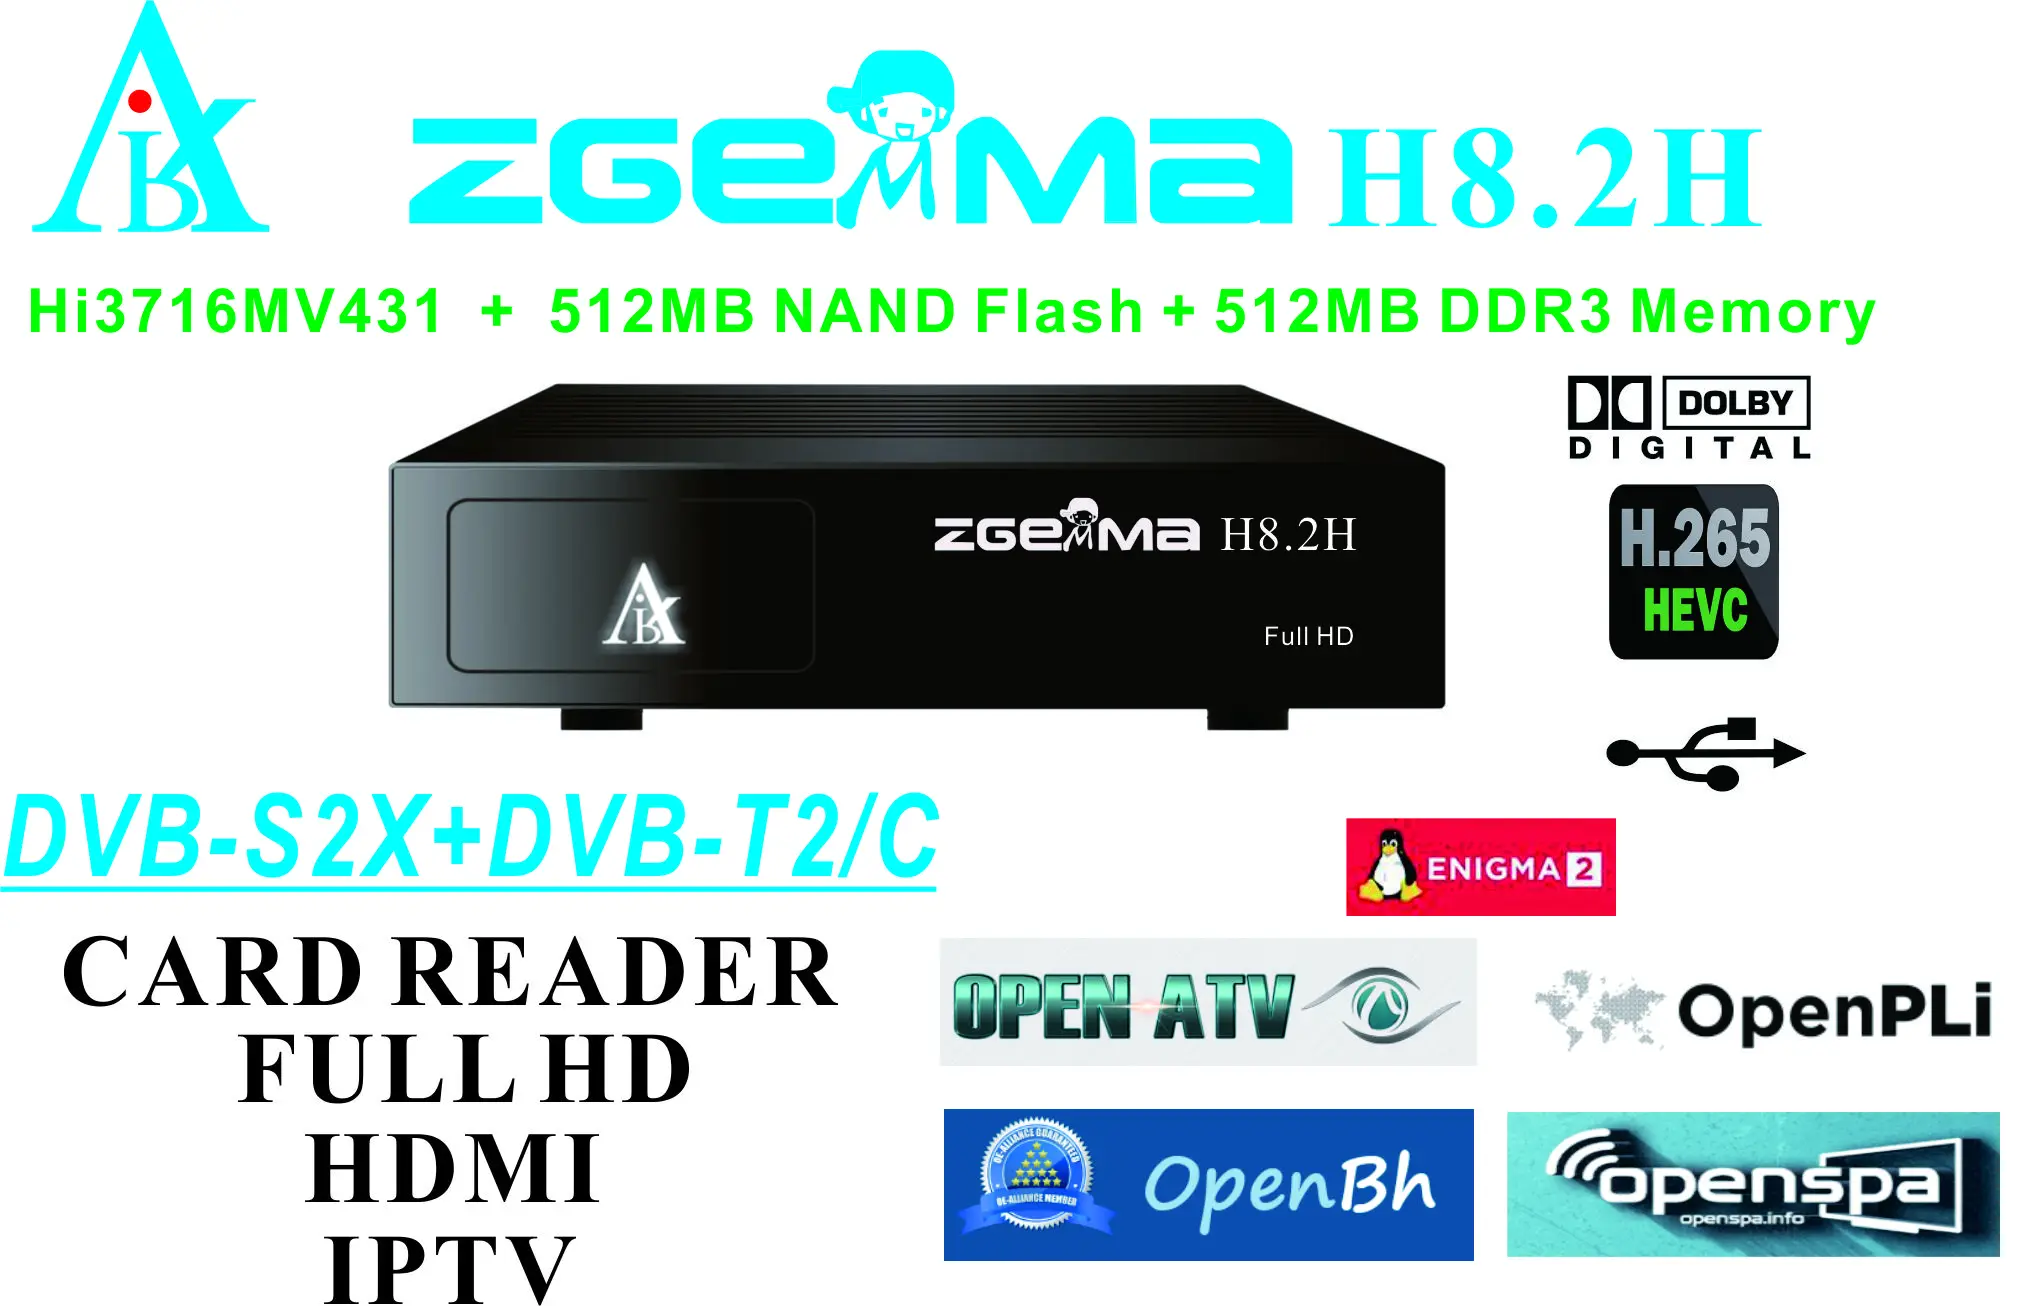 Tuner combo Zgemma H8.2H Linux Enigma2 DVB-S2 DVB-T2 HbbTV